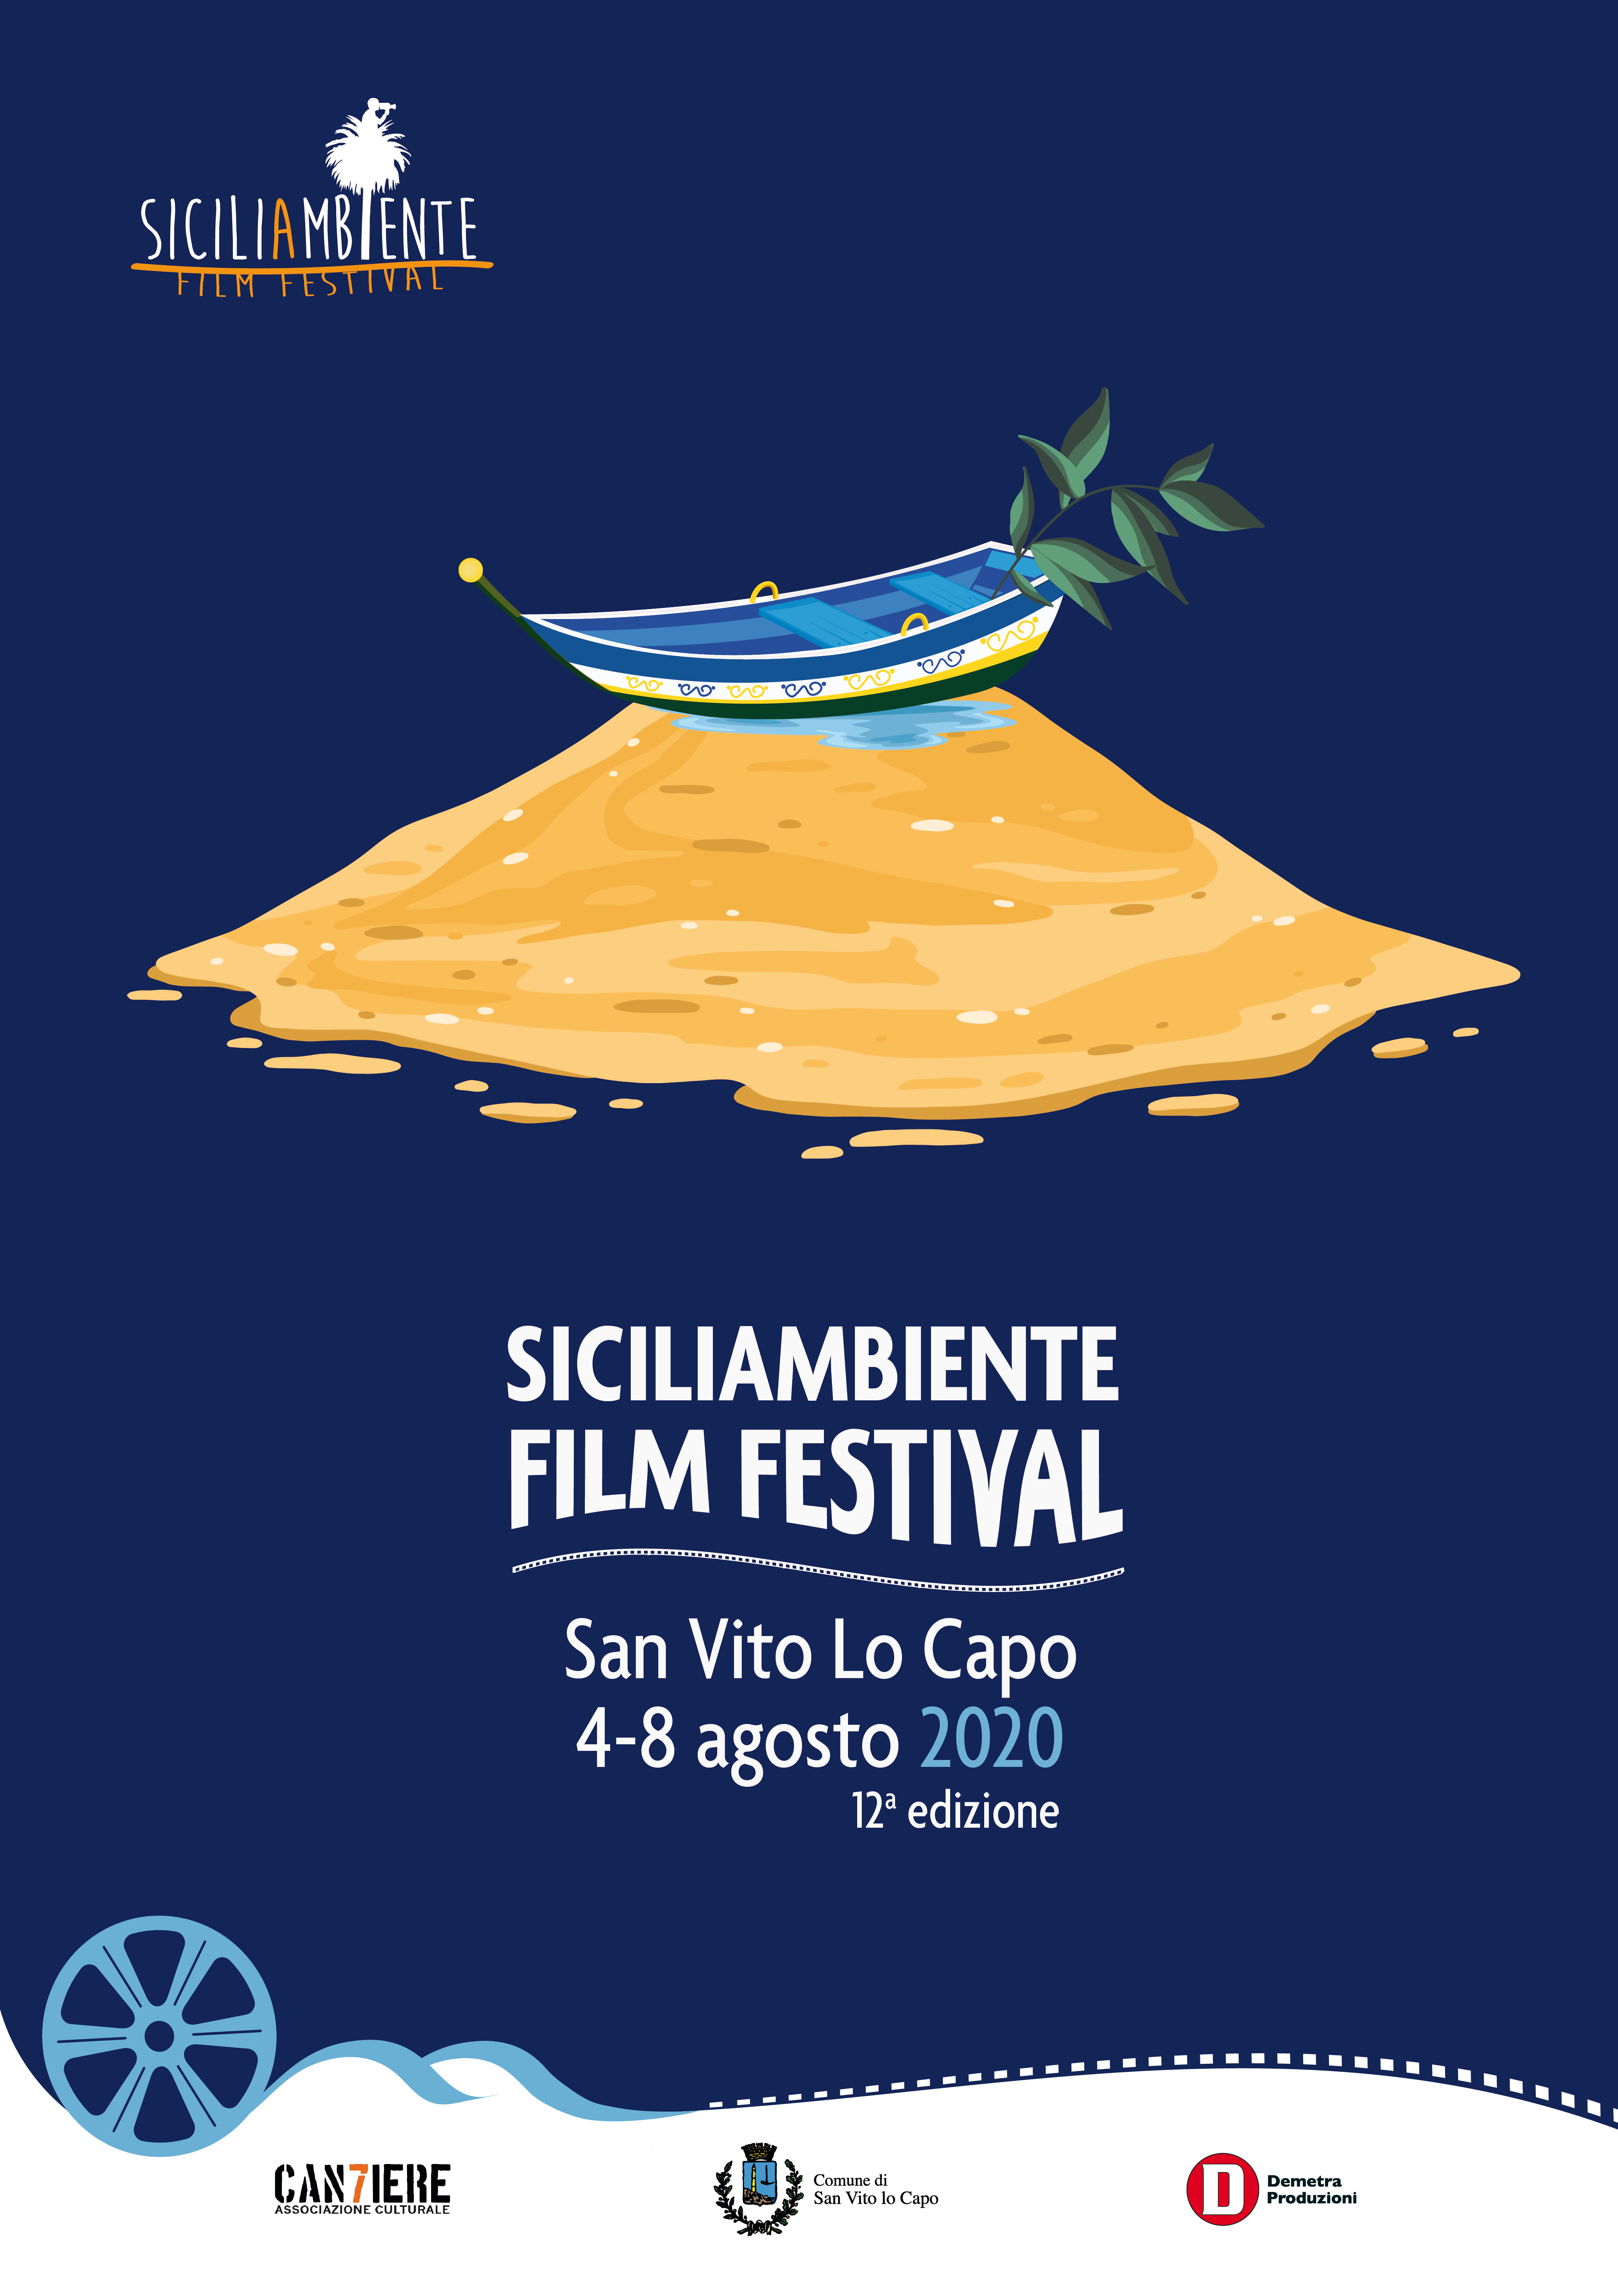 SiciliAmbiente relaunches the 12th edition on August 4-8 in San Vito Lo Capo